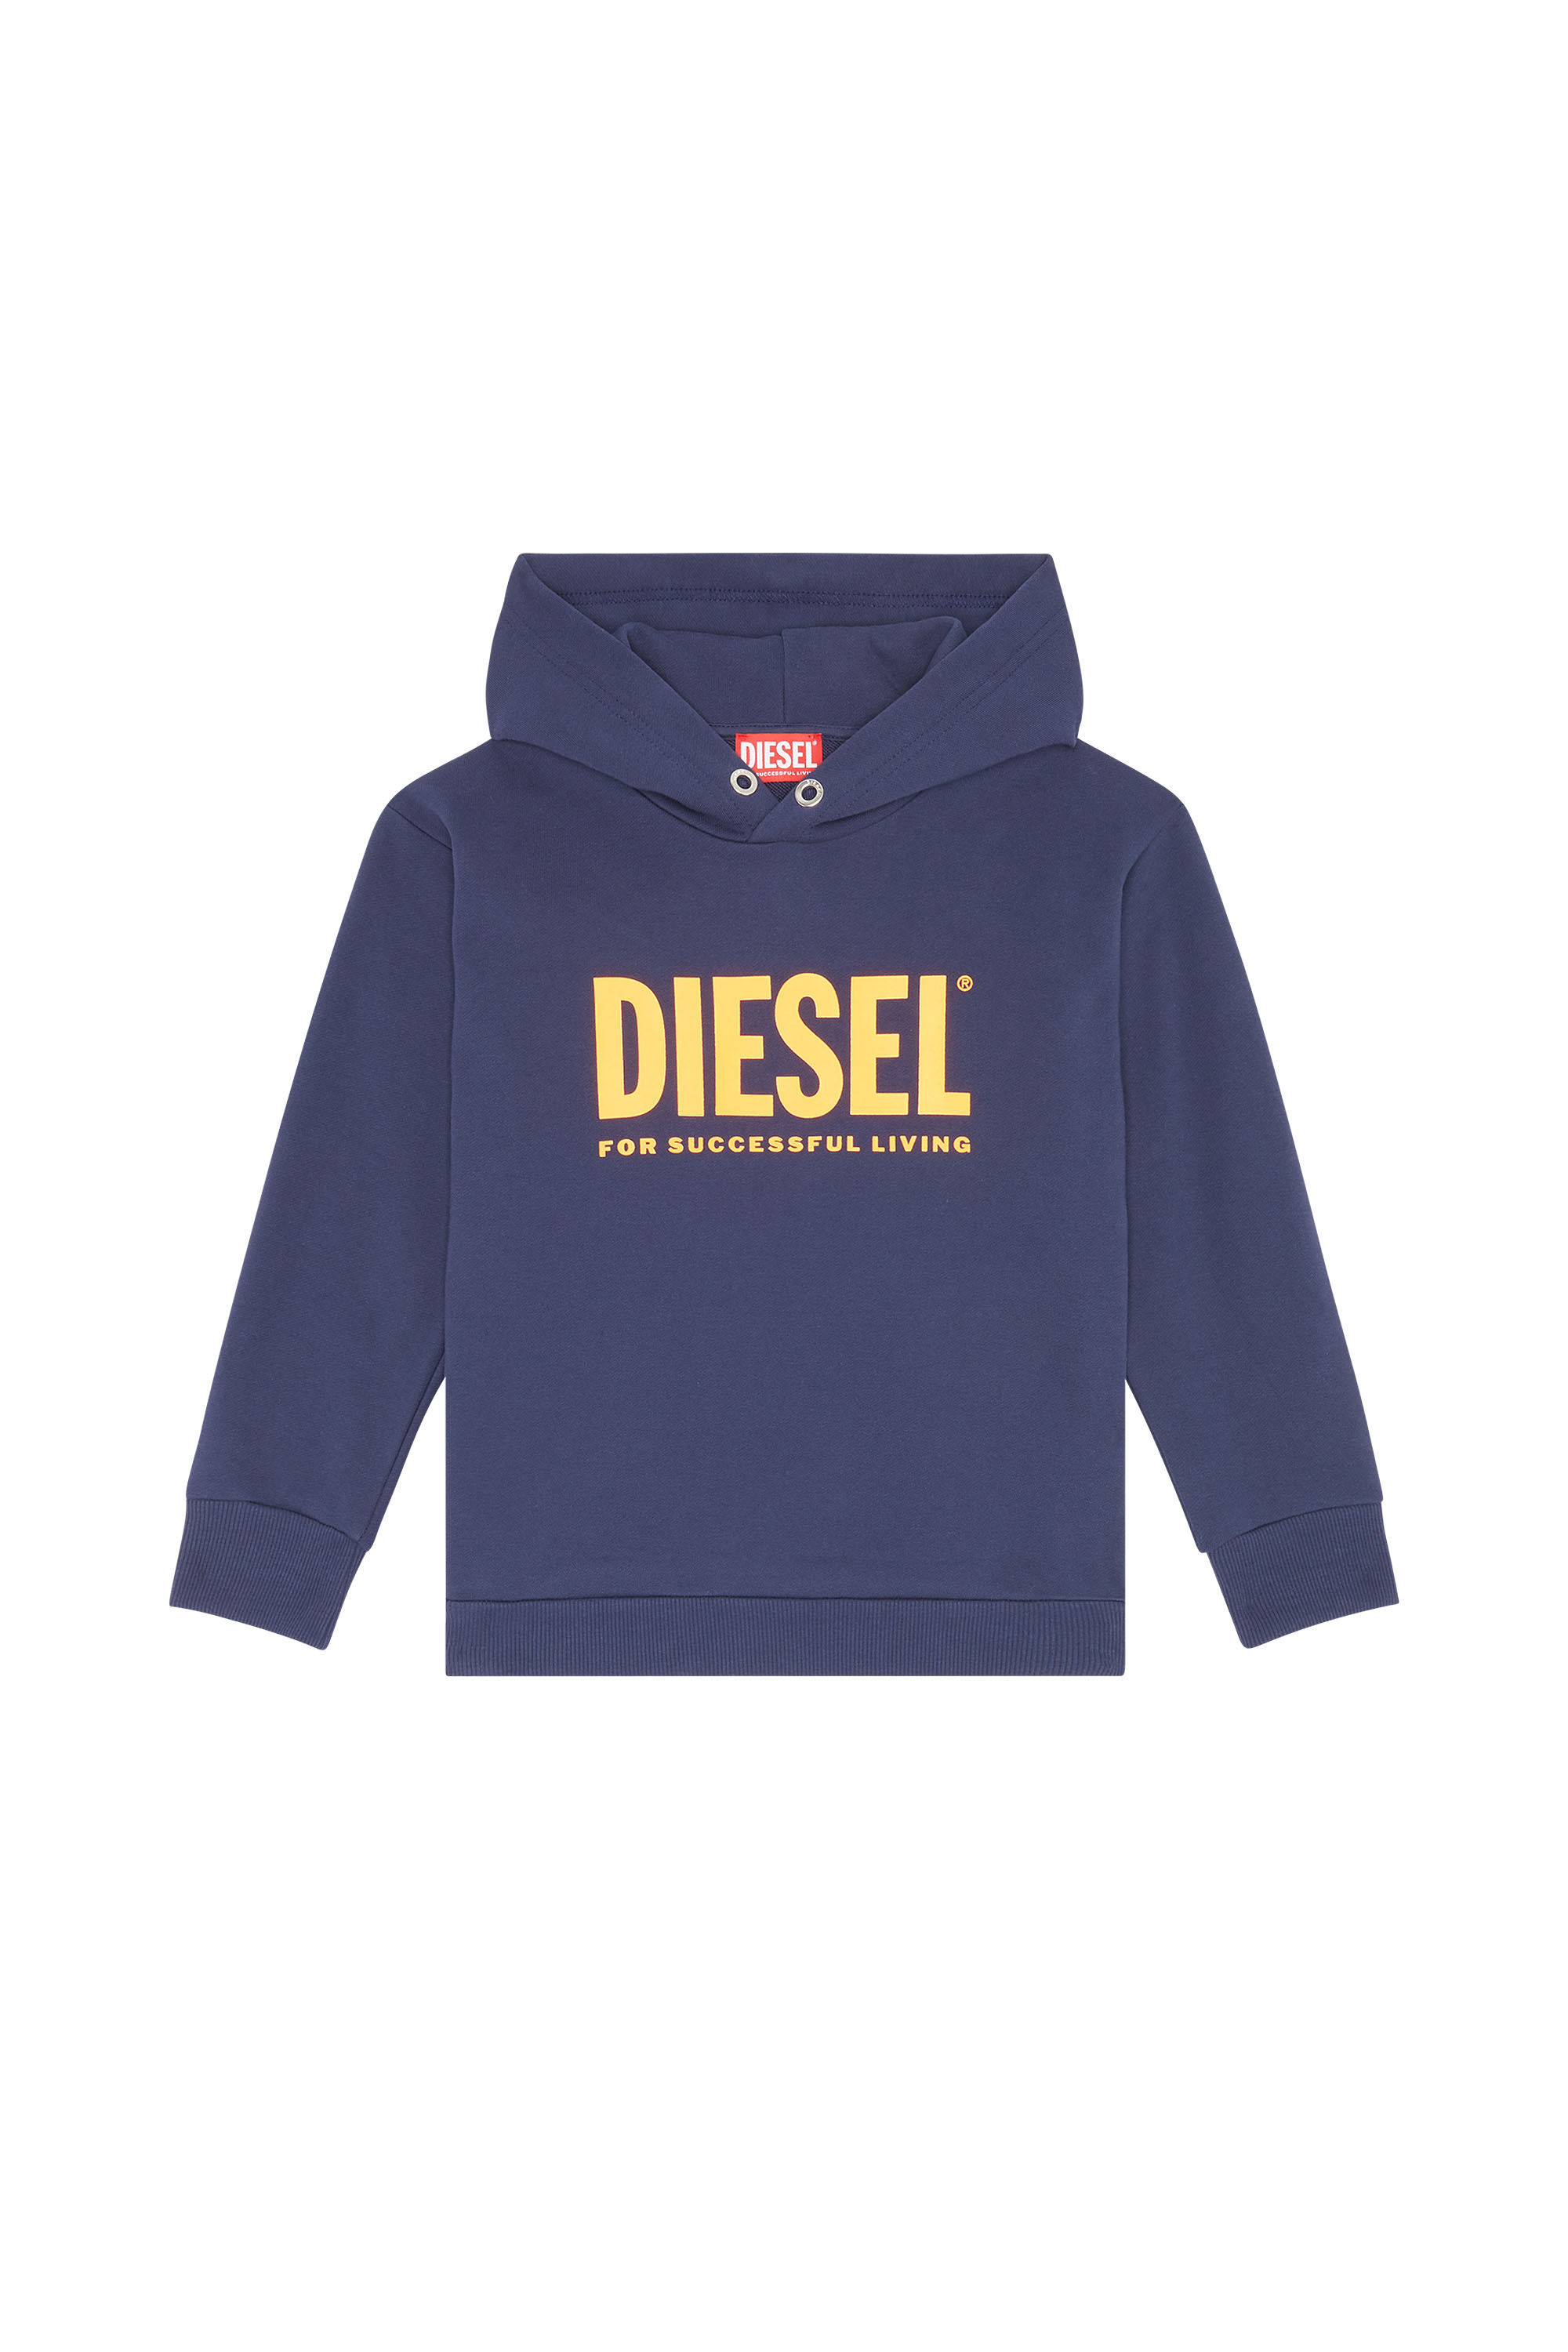 Diesel - SDIVISION-LO